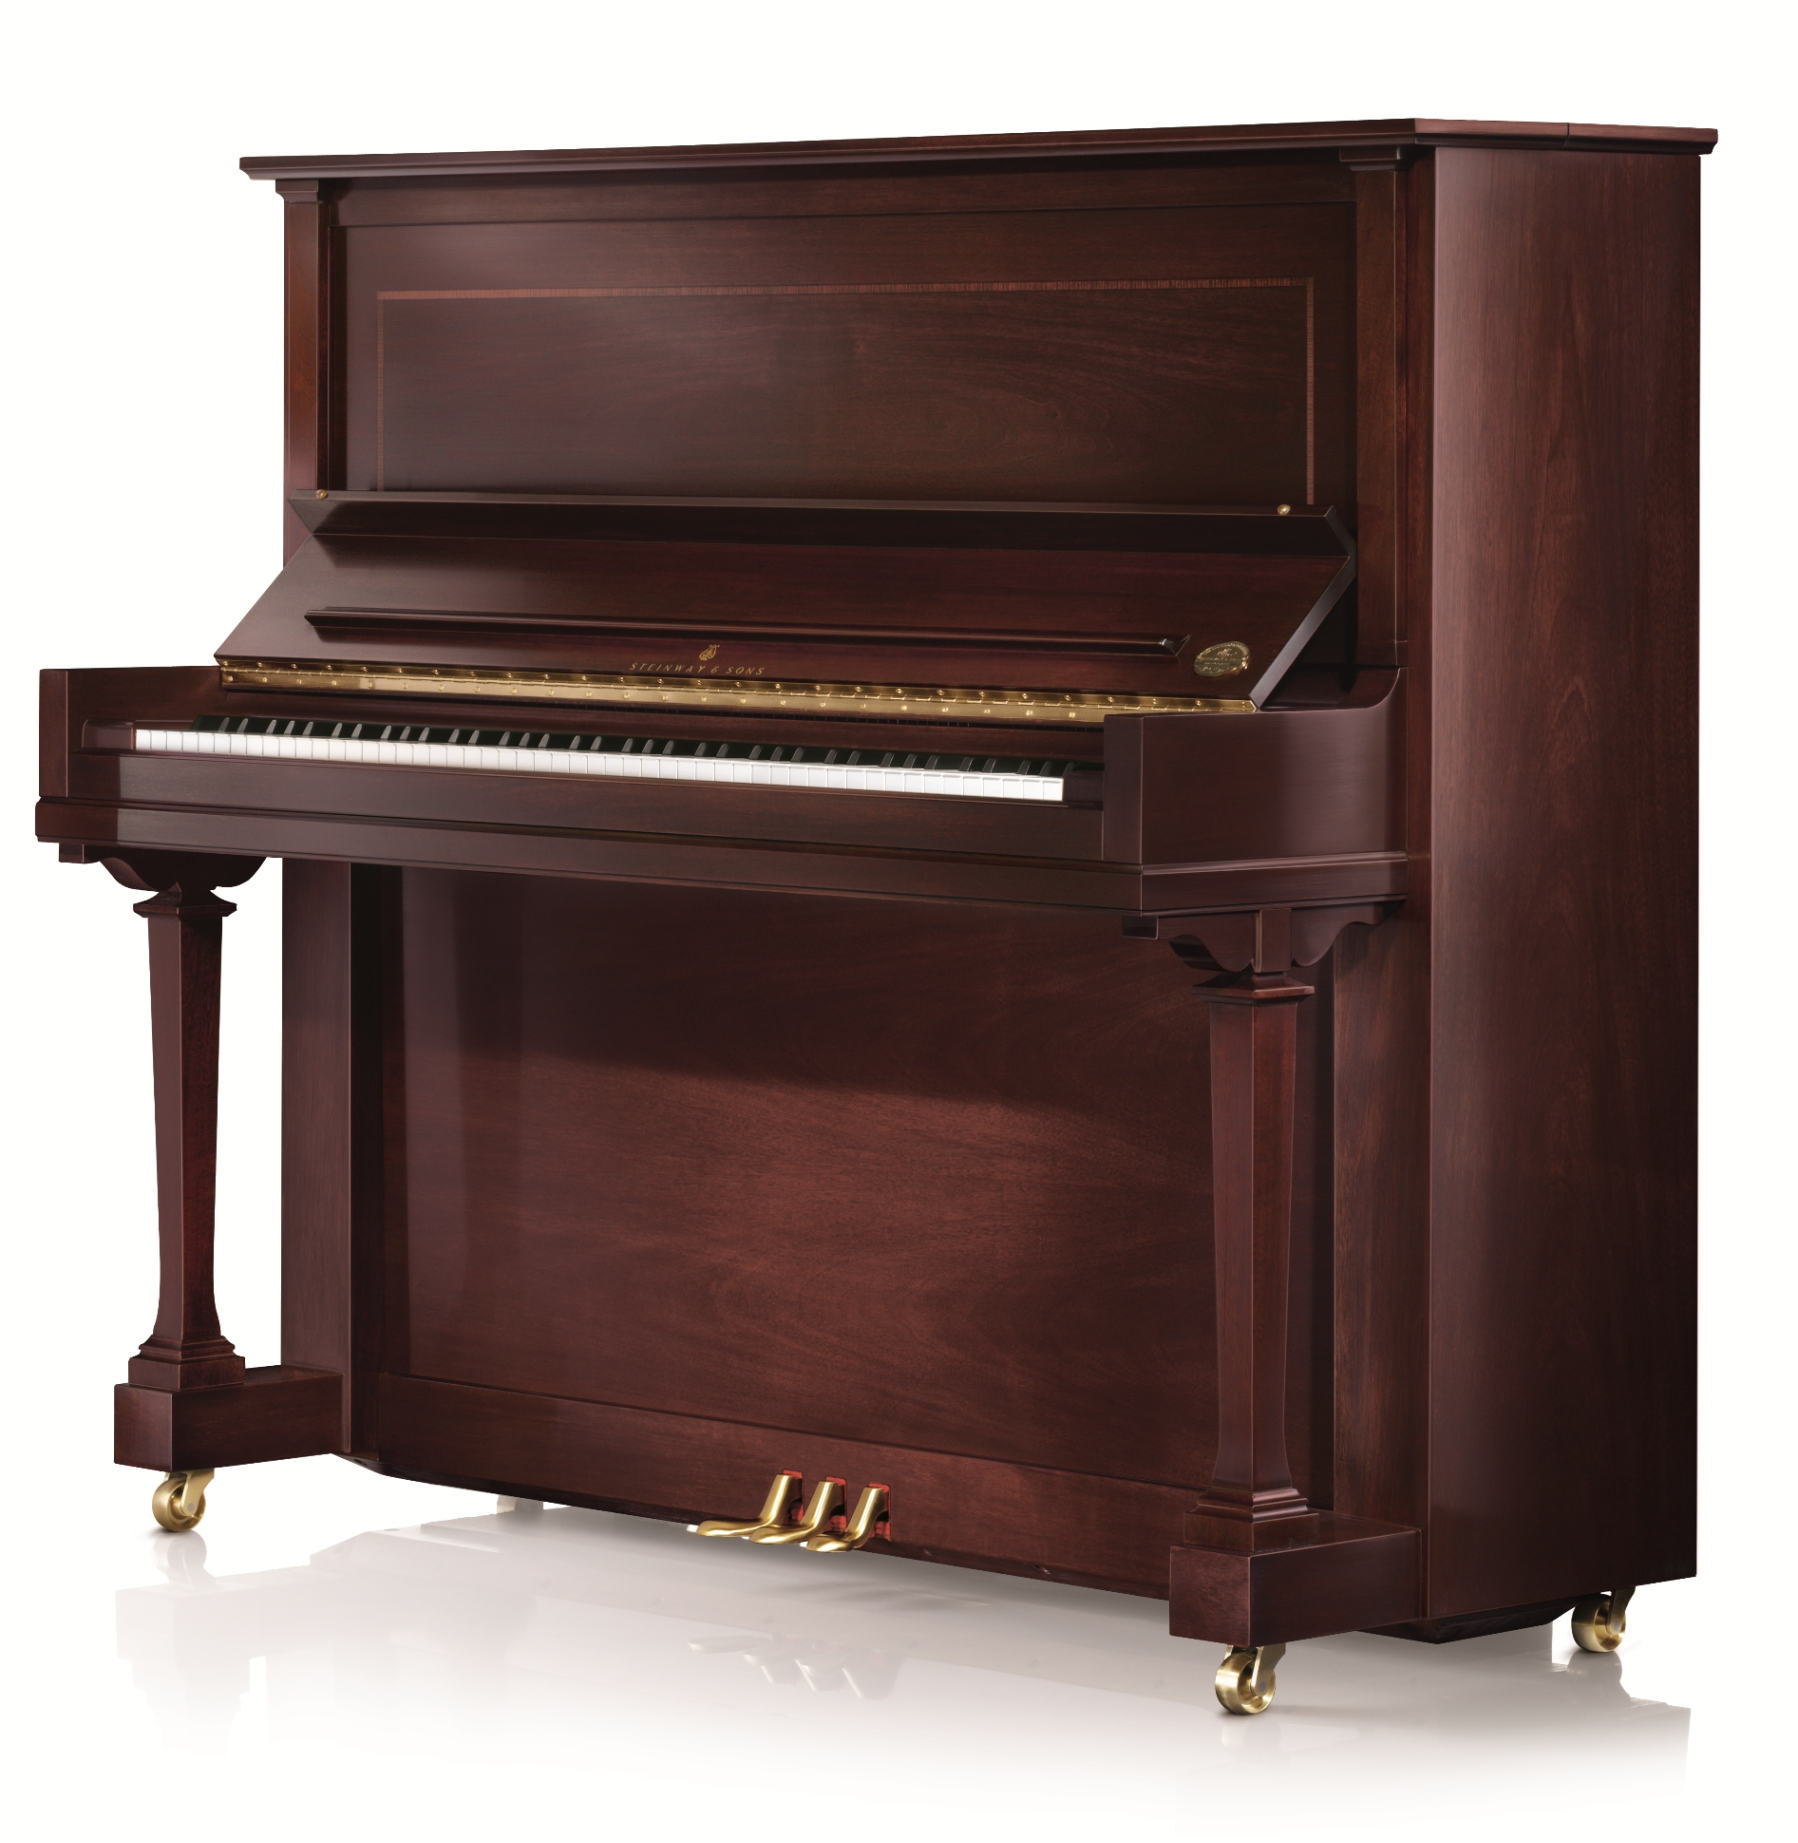 File:Steinway & Sons upright piano, model K-52 (mahogany finish